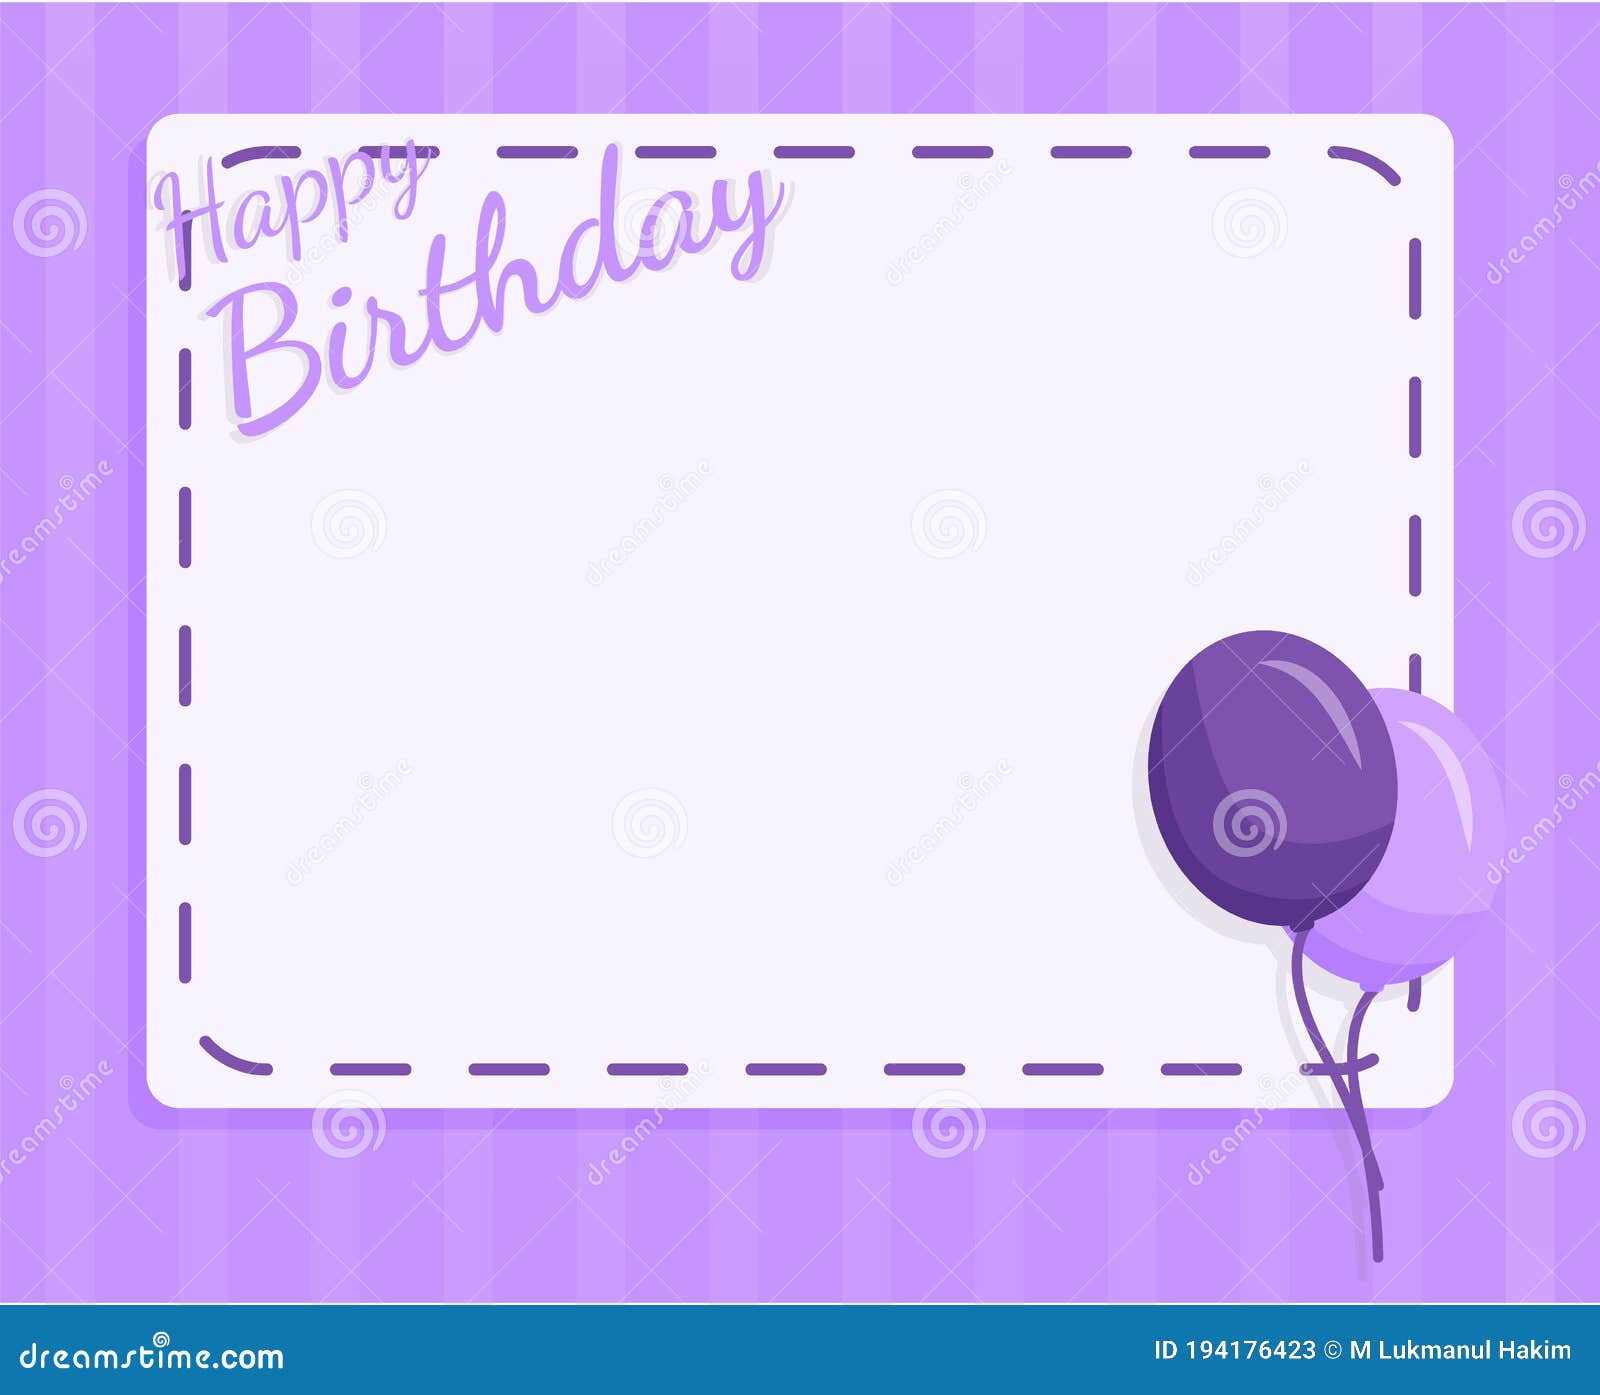 Thiết kế thẻ chúc mừng sinh nhật với các hình ảnh độc đáo, thông điệp tuyệt vời và chất lượng sản phẩm tốt thì đây là món quà hoàn hảo cho mọi người trong bất kỳ dịp sinh nhật nào. Nó giúp bạn truyền tải thông điệp của mình đến người nhận một cách tốt nhất.